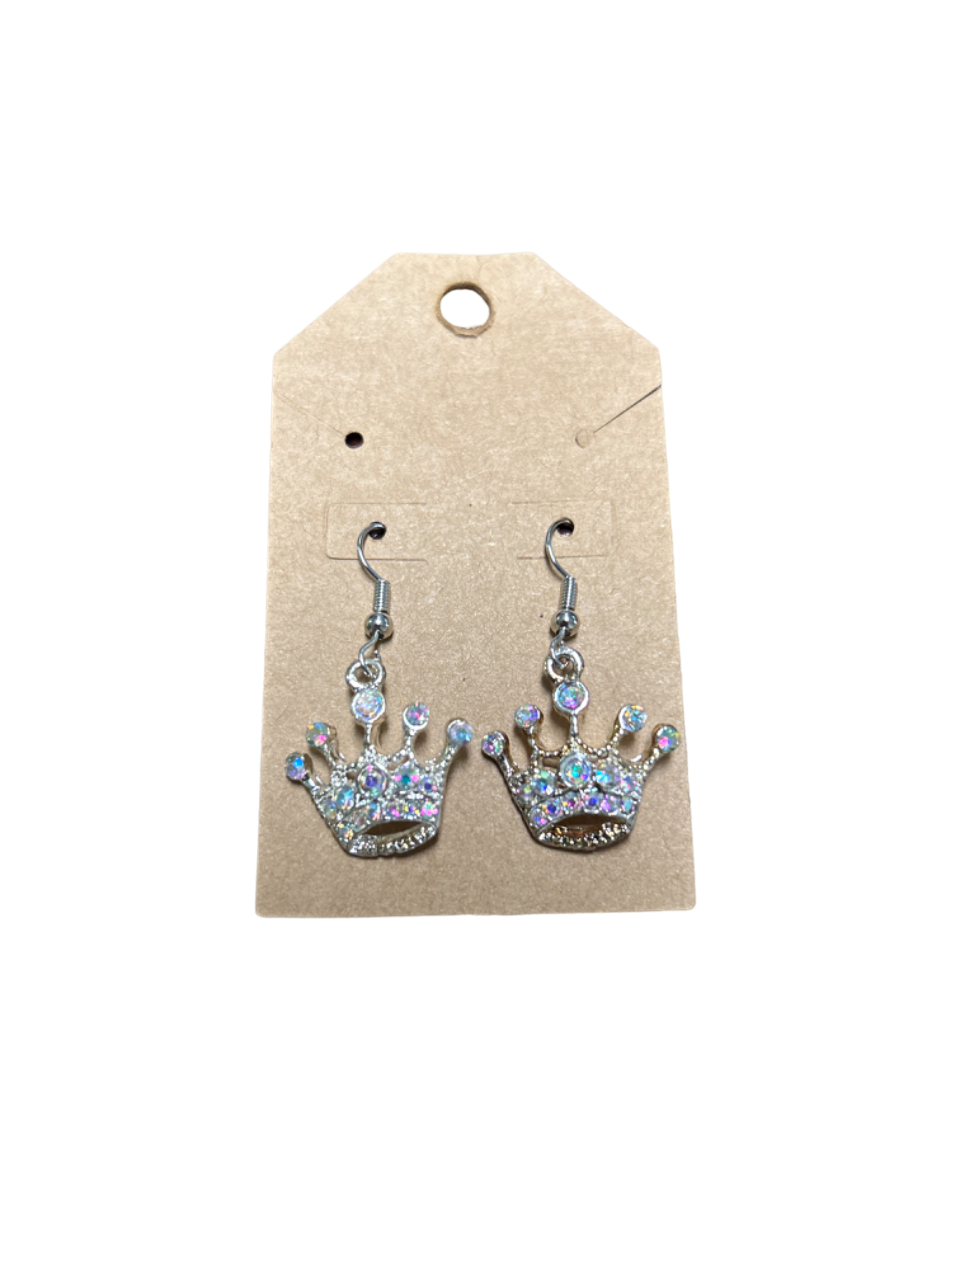 Silver Rhinestone Crown Earrings